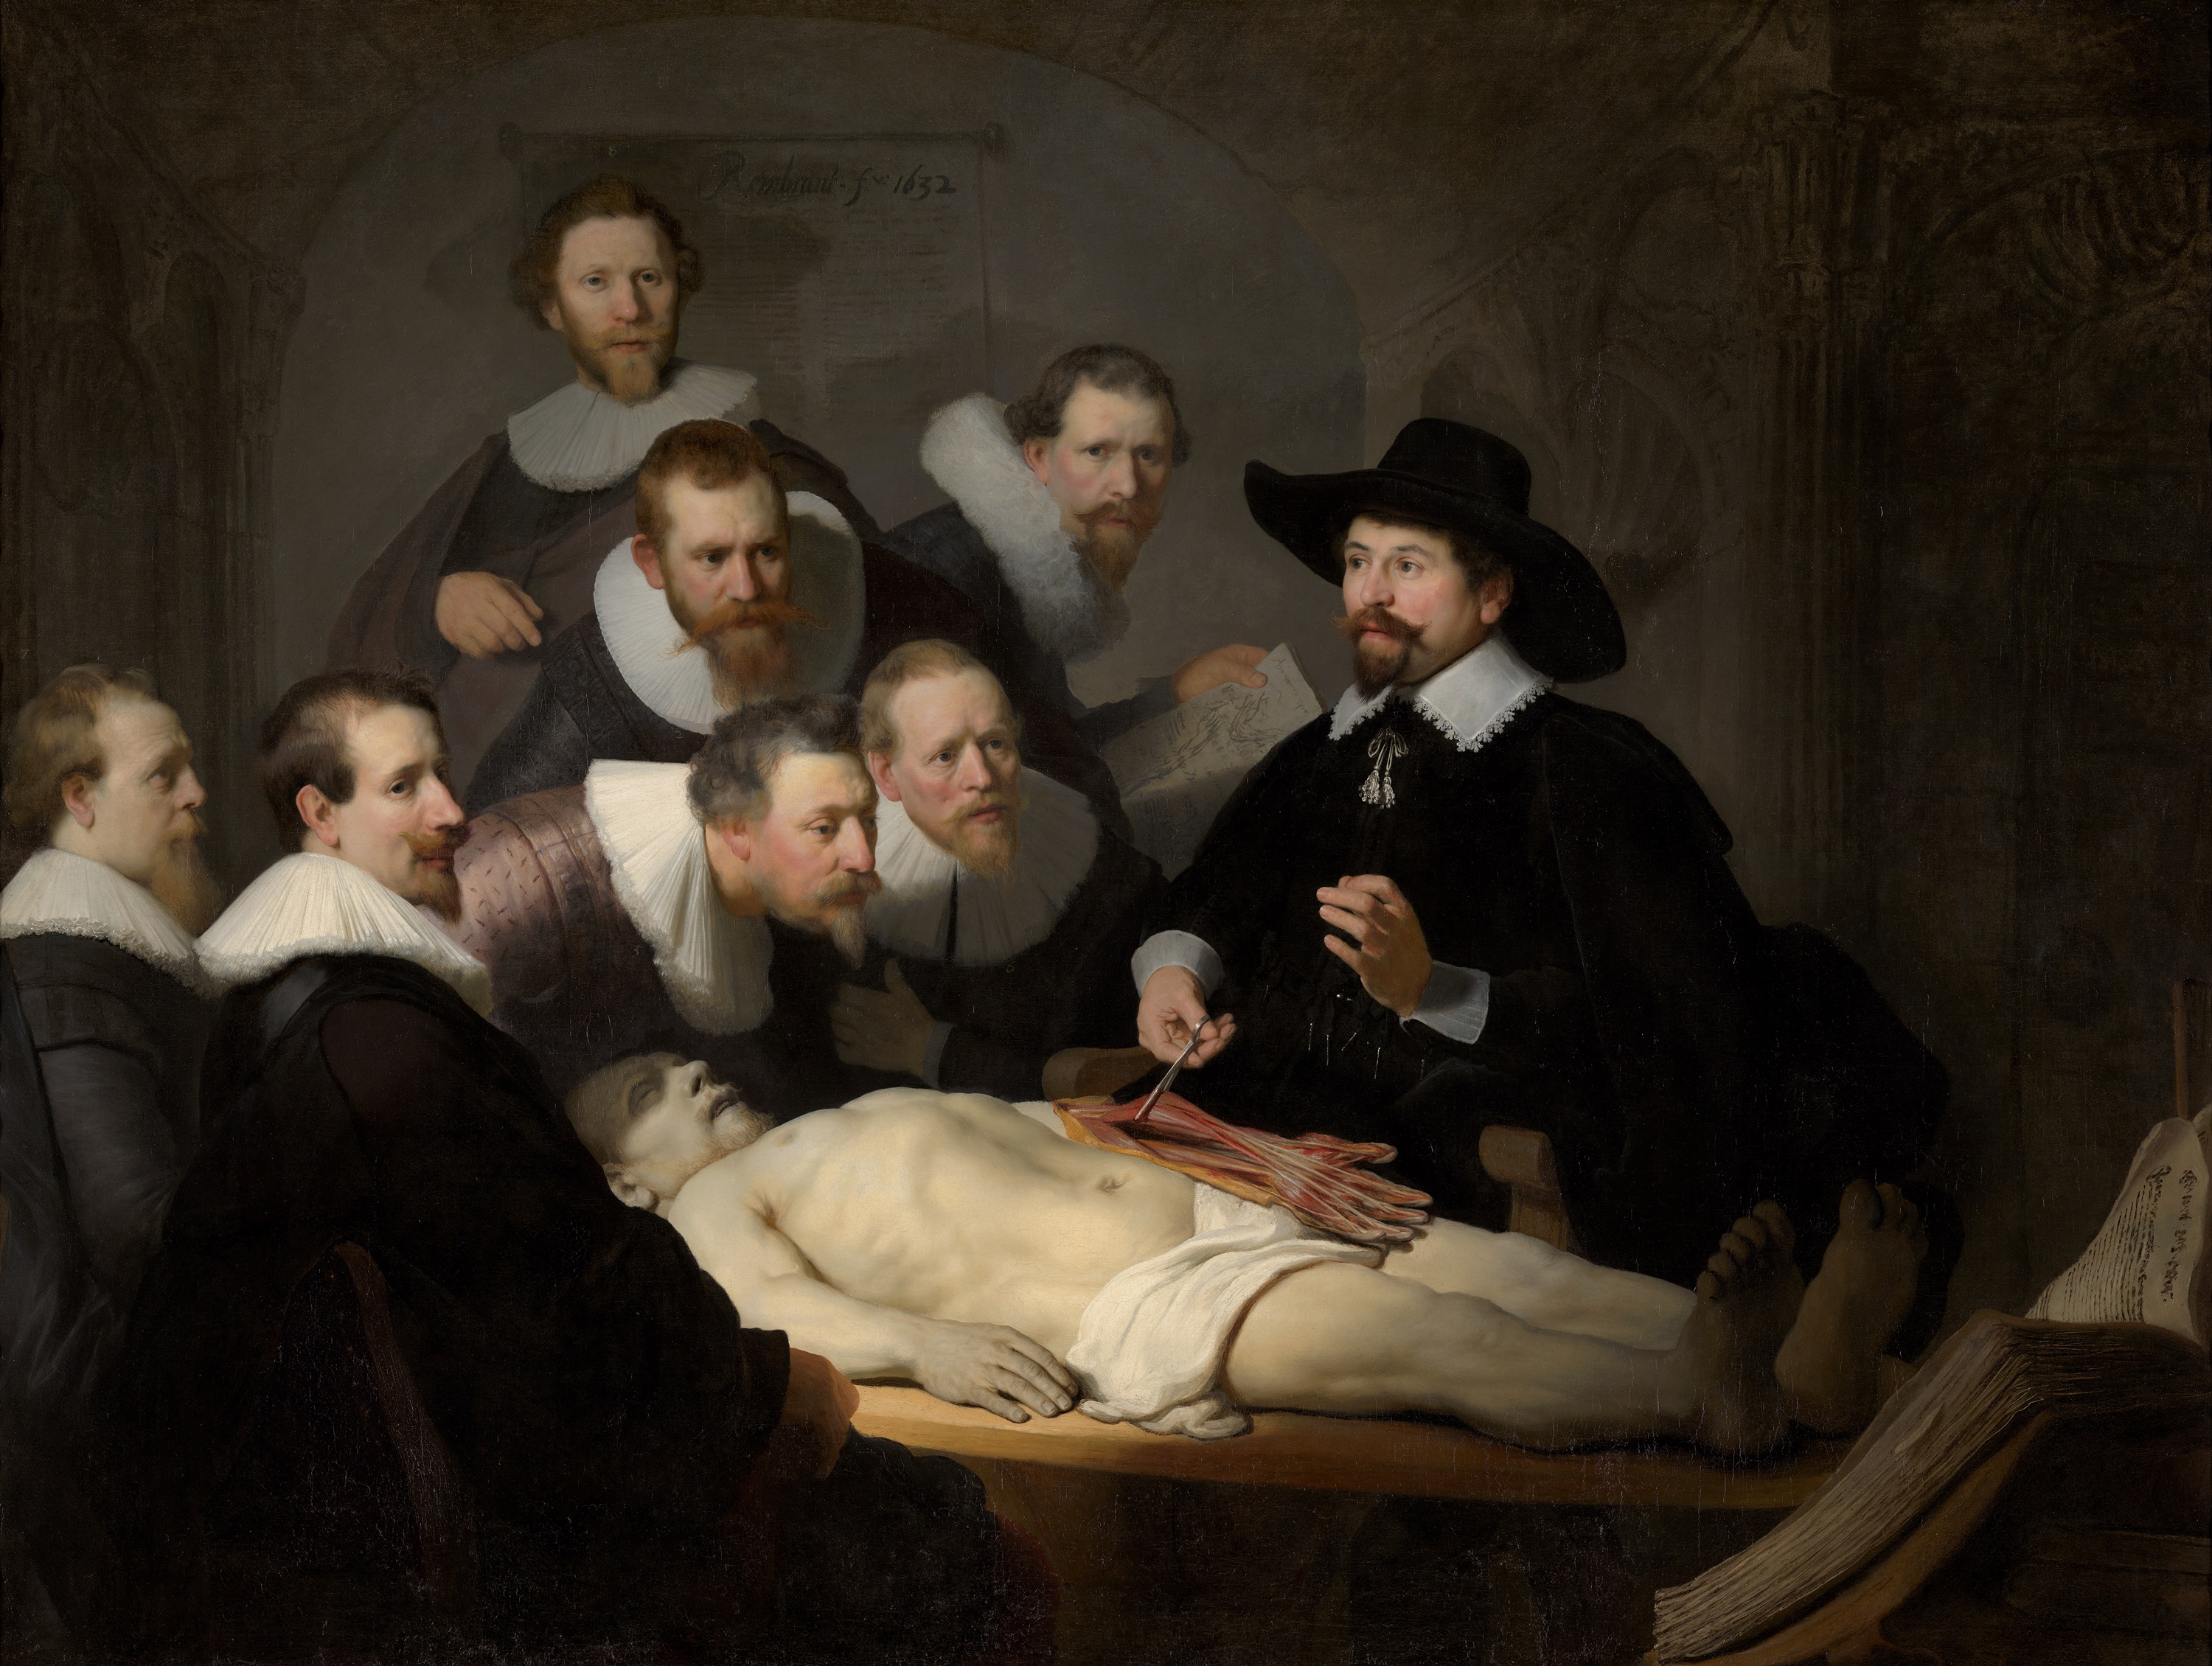 درس التشريح للطبيب نیکولاس تولب by Rembrandt van Rijn - 1632 - 170 x 270 سم 